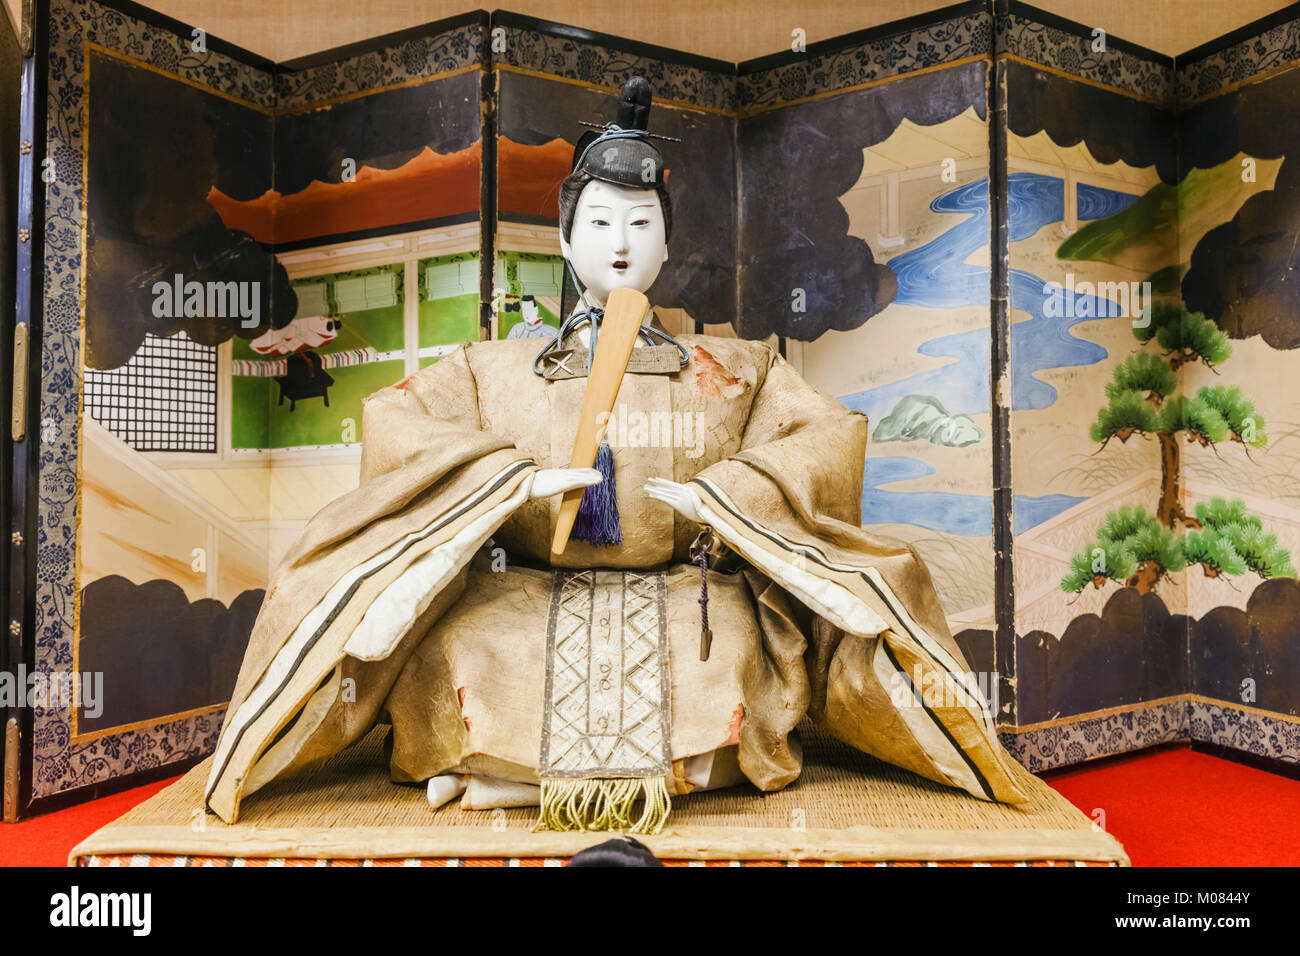 Japón, Honshu, Prefectura de Shizuoka, Atami Atami, Castillo, Exposición de muñecas japonesas en trajes de época histórica Foto de stock